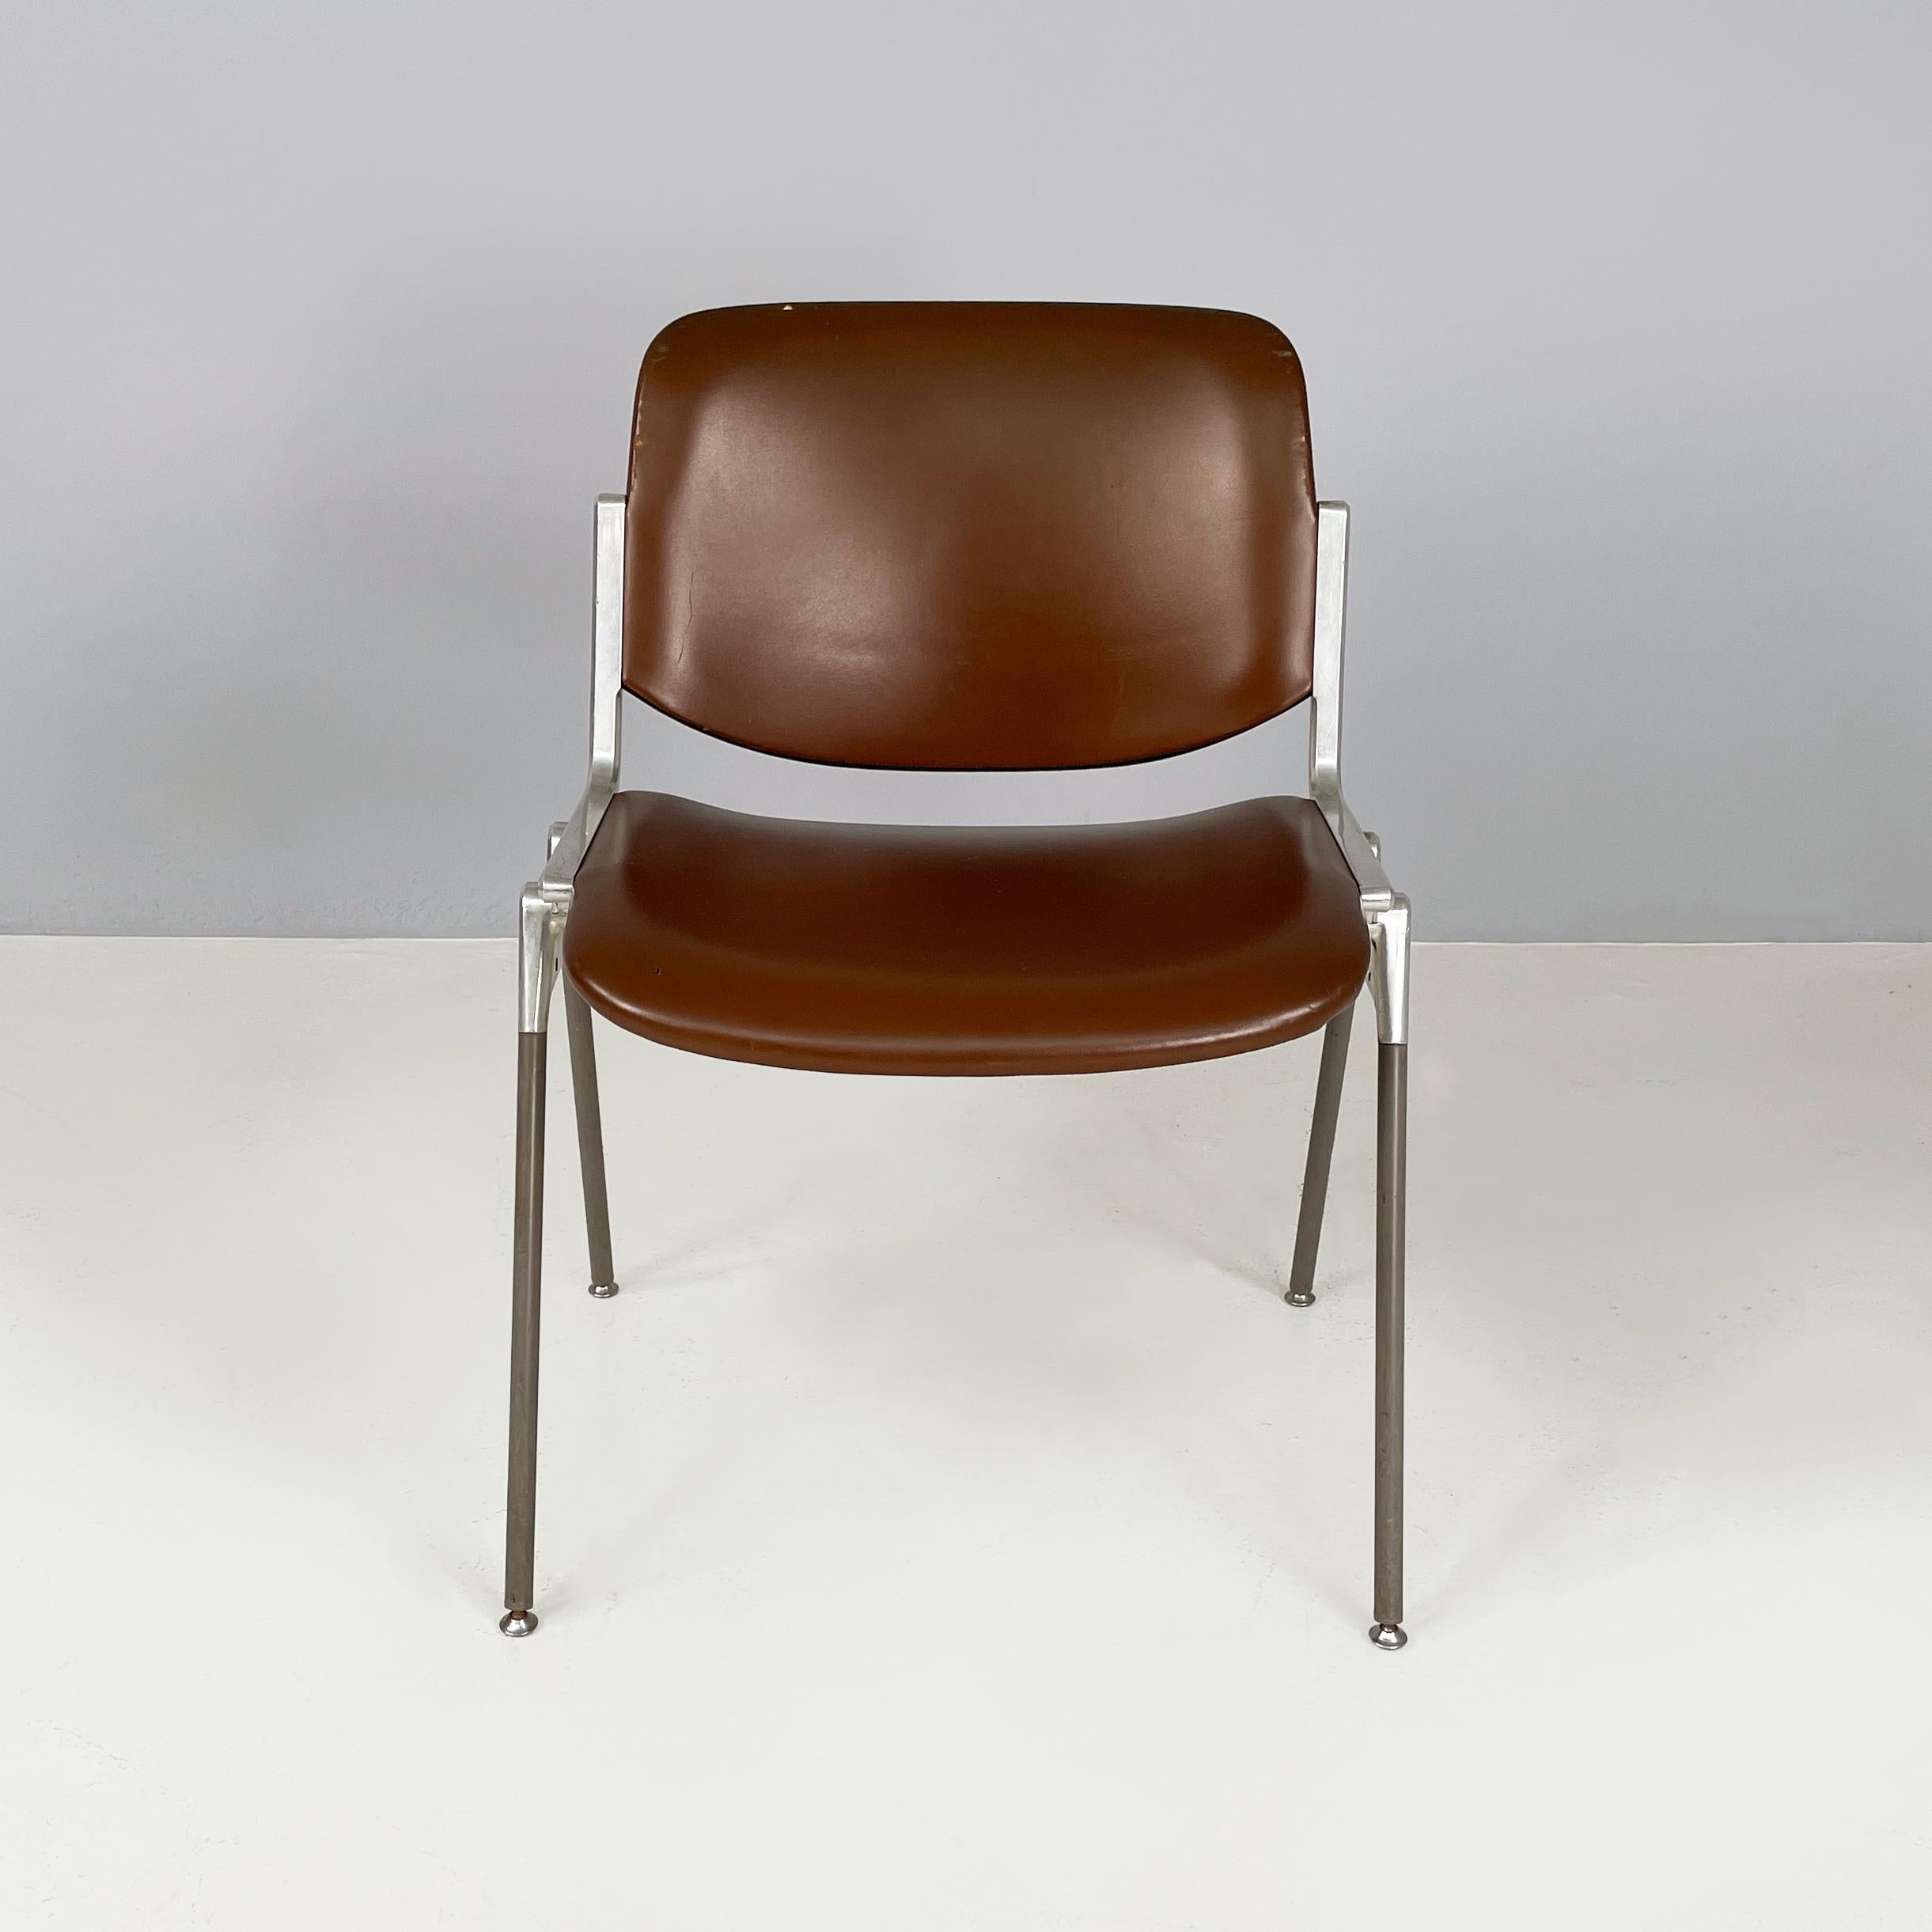 Chaise italienne moderne du milieu du siècle DSC par Giancarlo Piretti pour Anonima Castelli, 1970
Chaise mod. DSC rembourrée et recouverte de cuir brun foncé. L'assise et le dossier sont rectangulaires avec des angles arrondis. La structure robuste